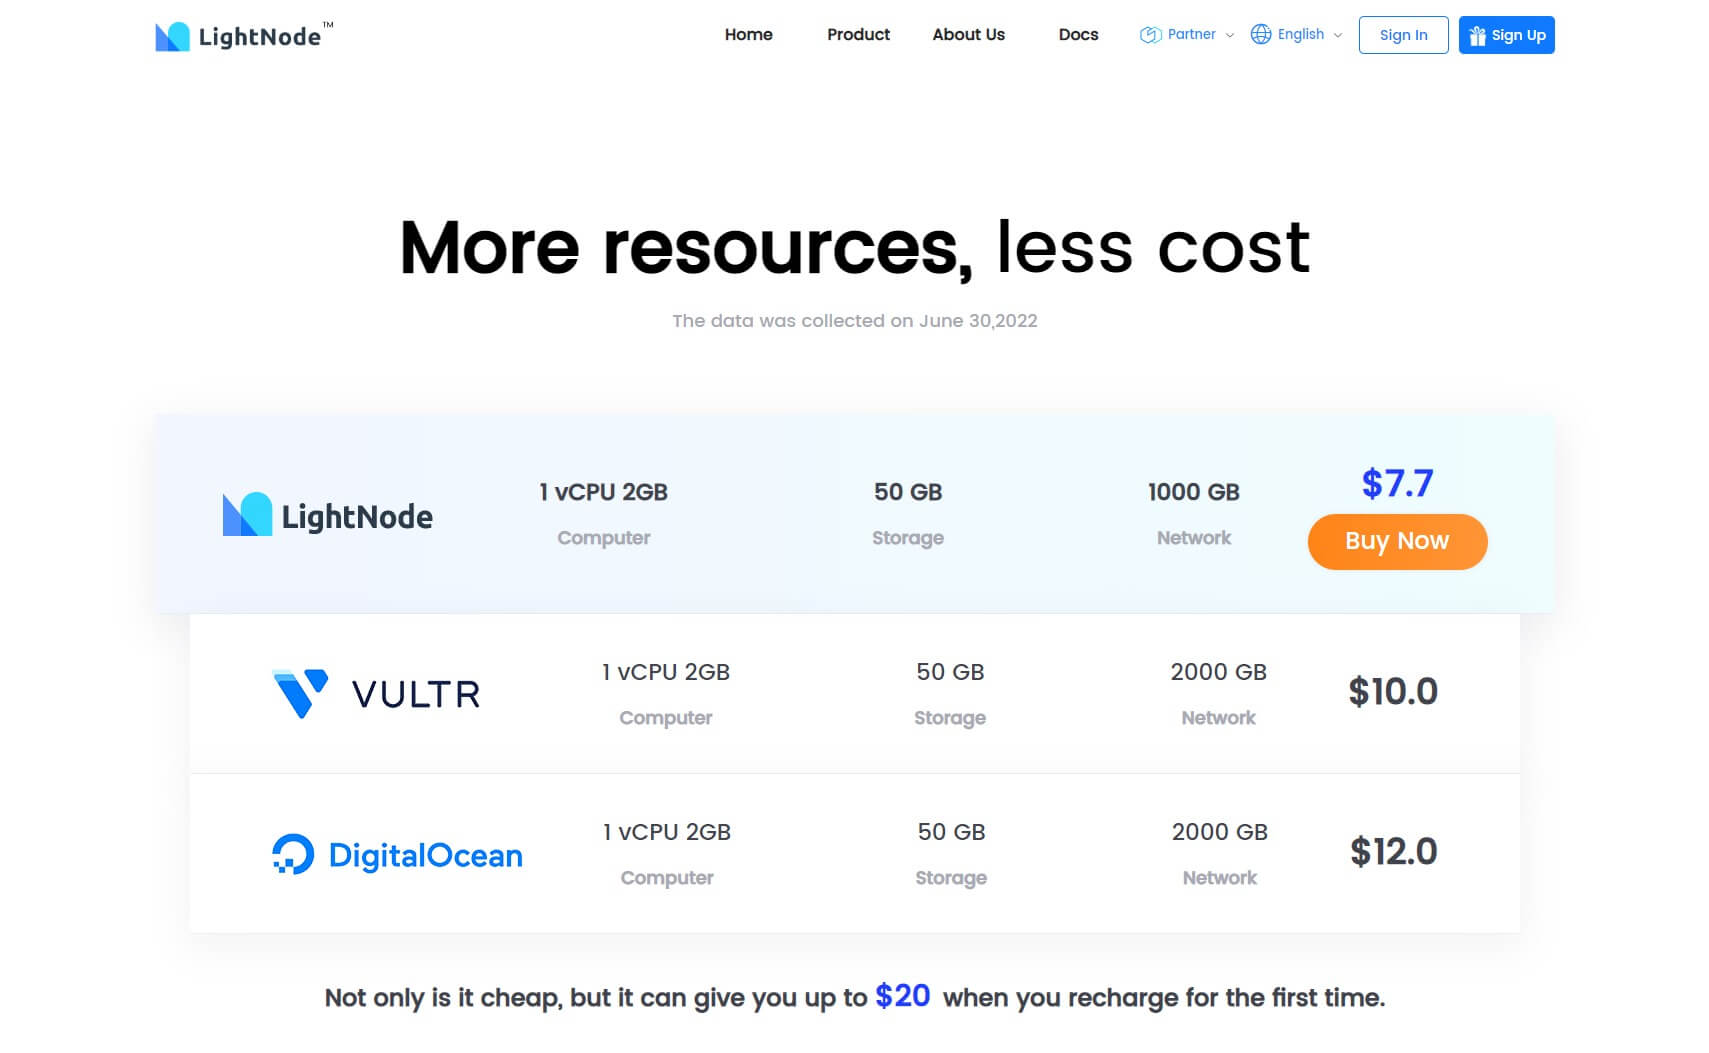 LightNode-is-Better-LightNode-vs-Digitalocean-Vutlr-1-vCPU-2-GB-RAM-Only-7-7